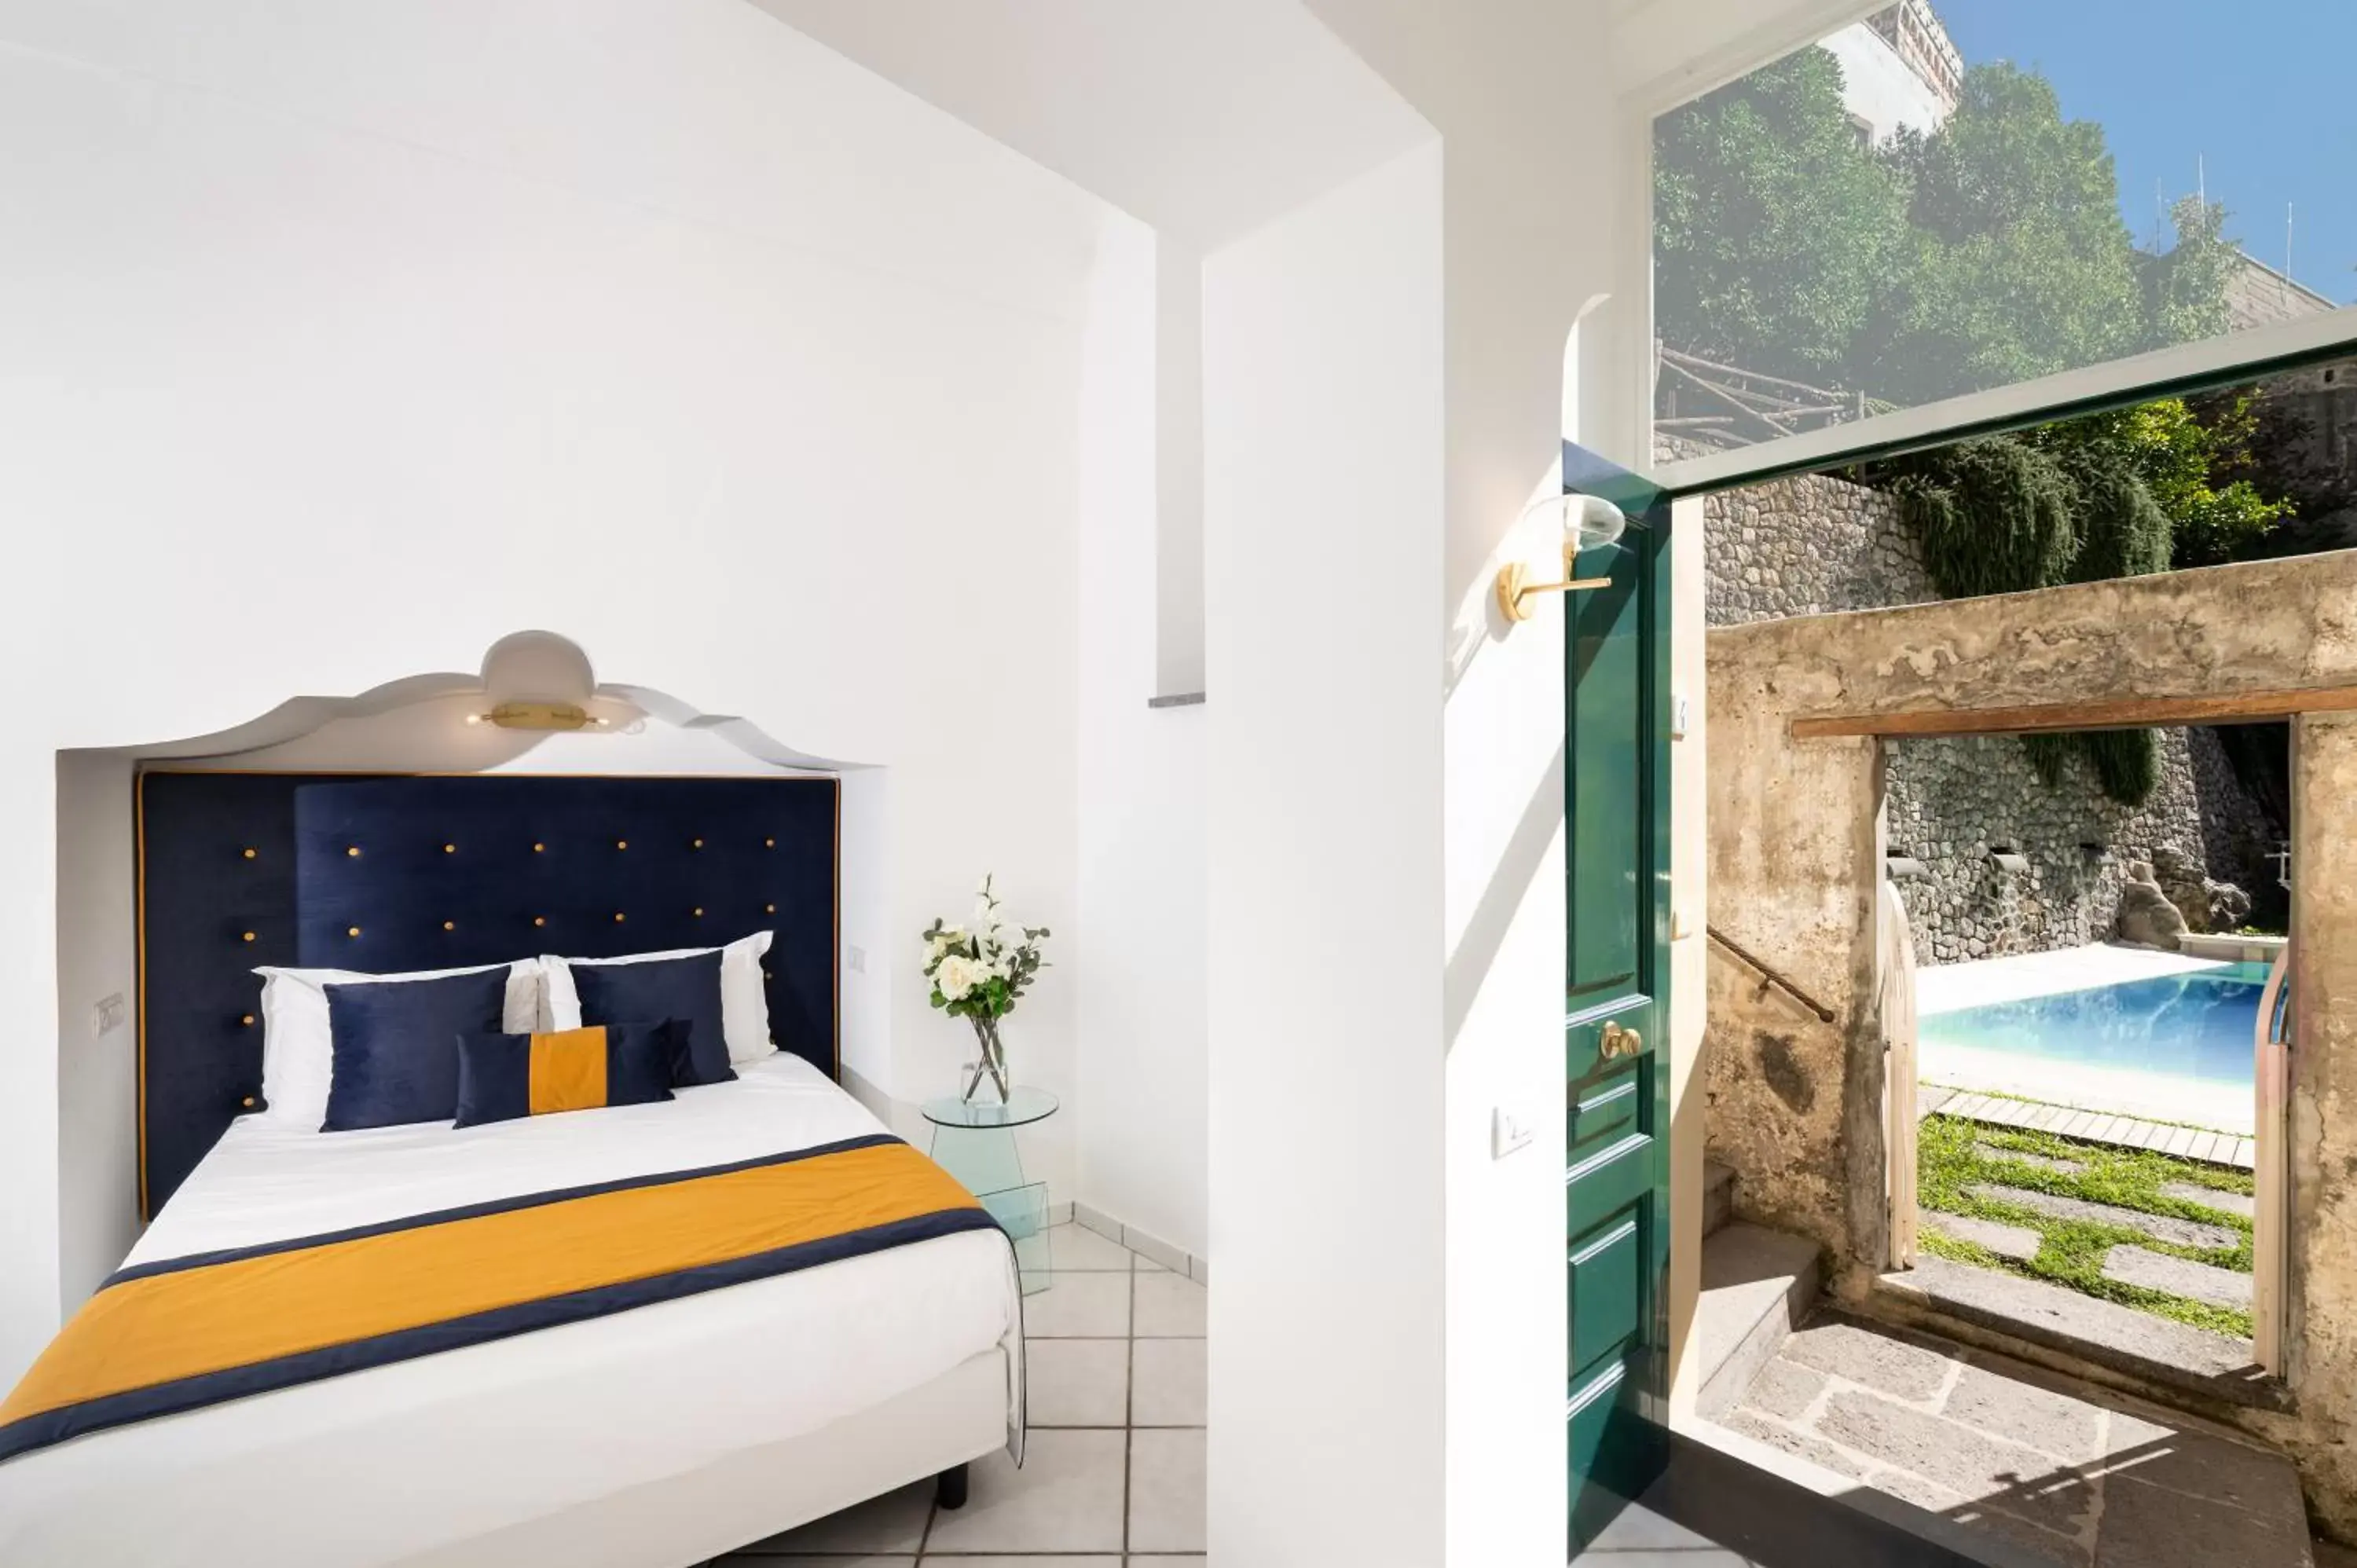 Bed in Amalfi Resort